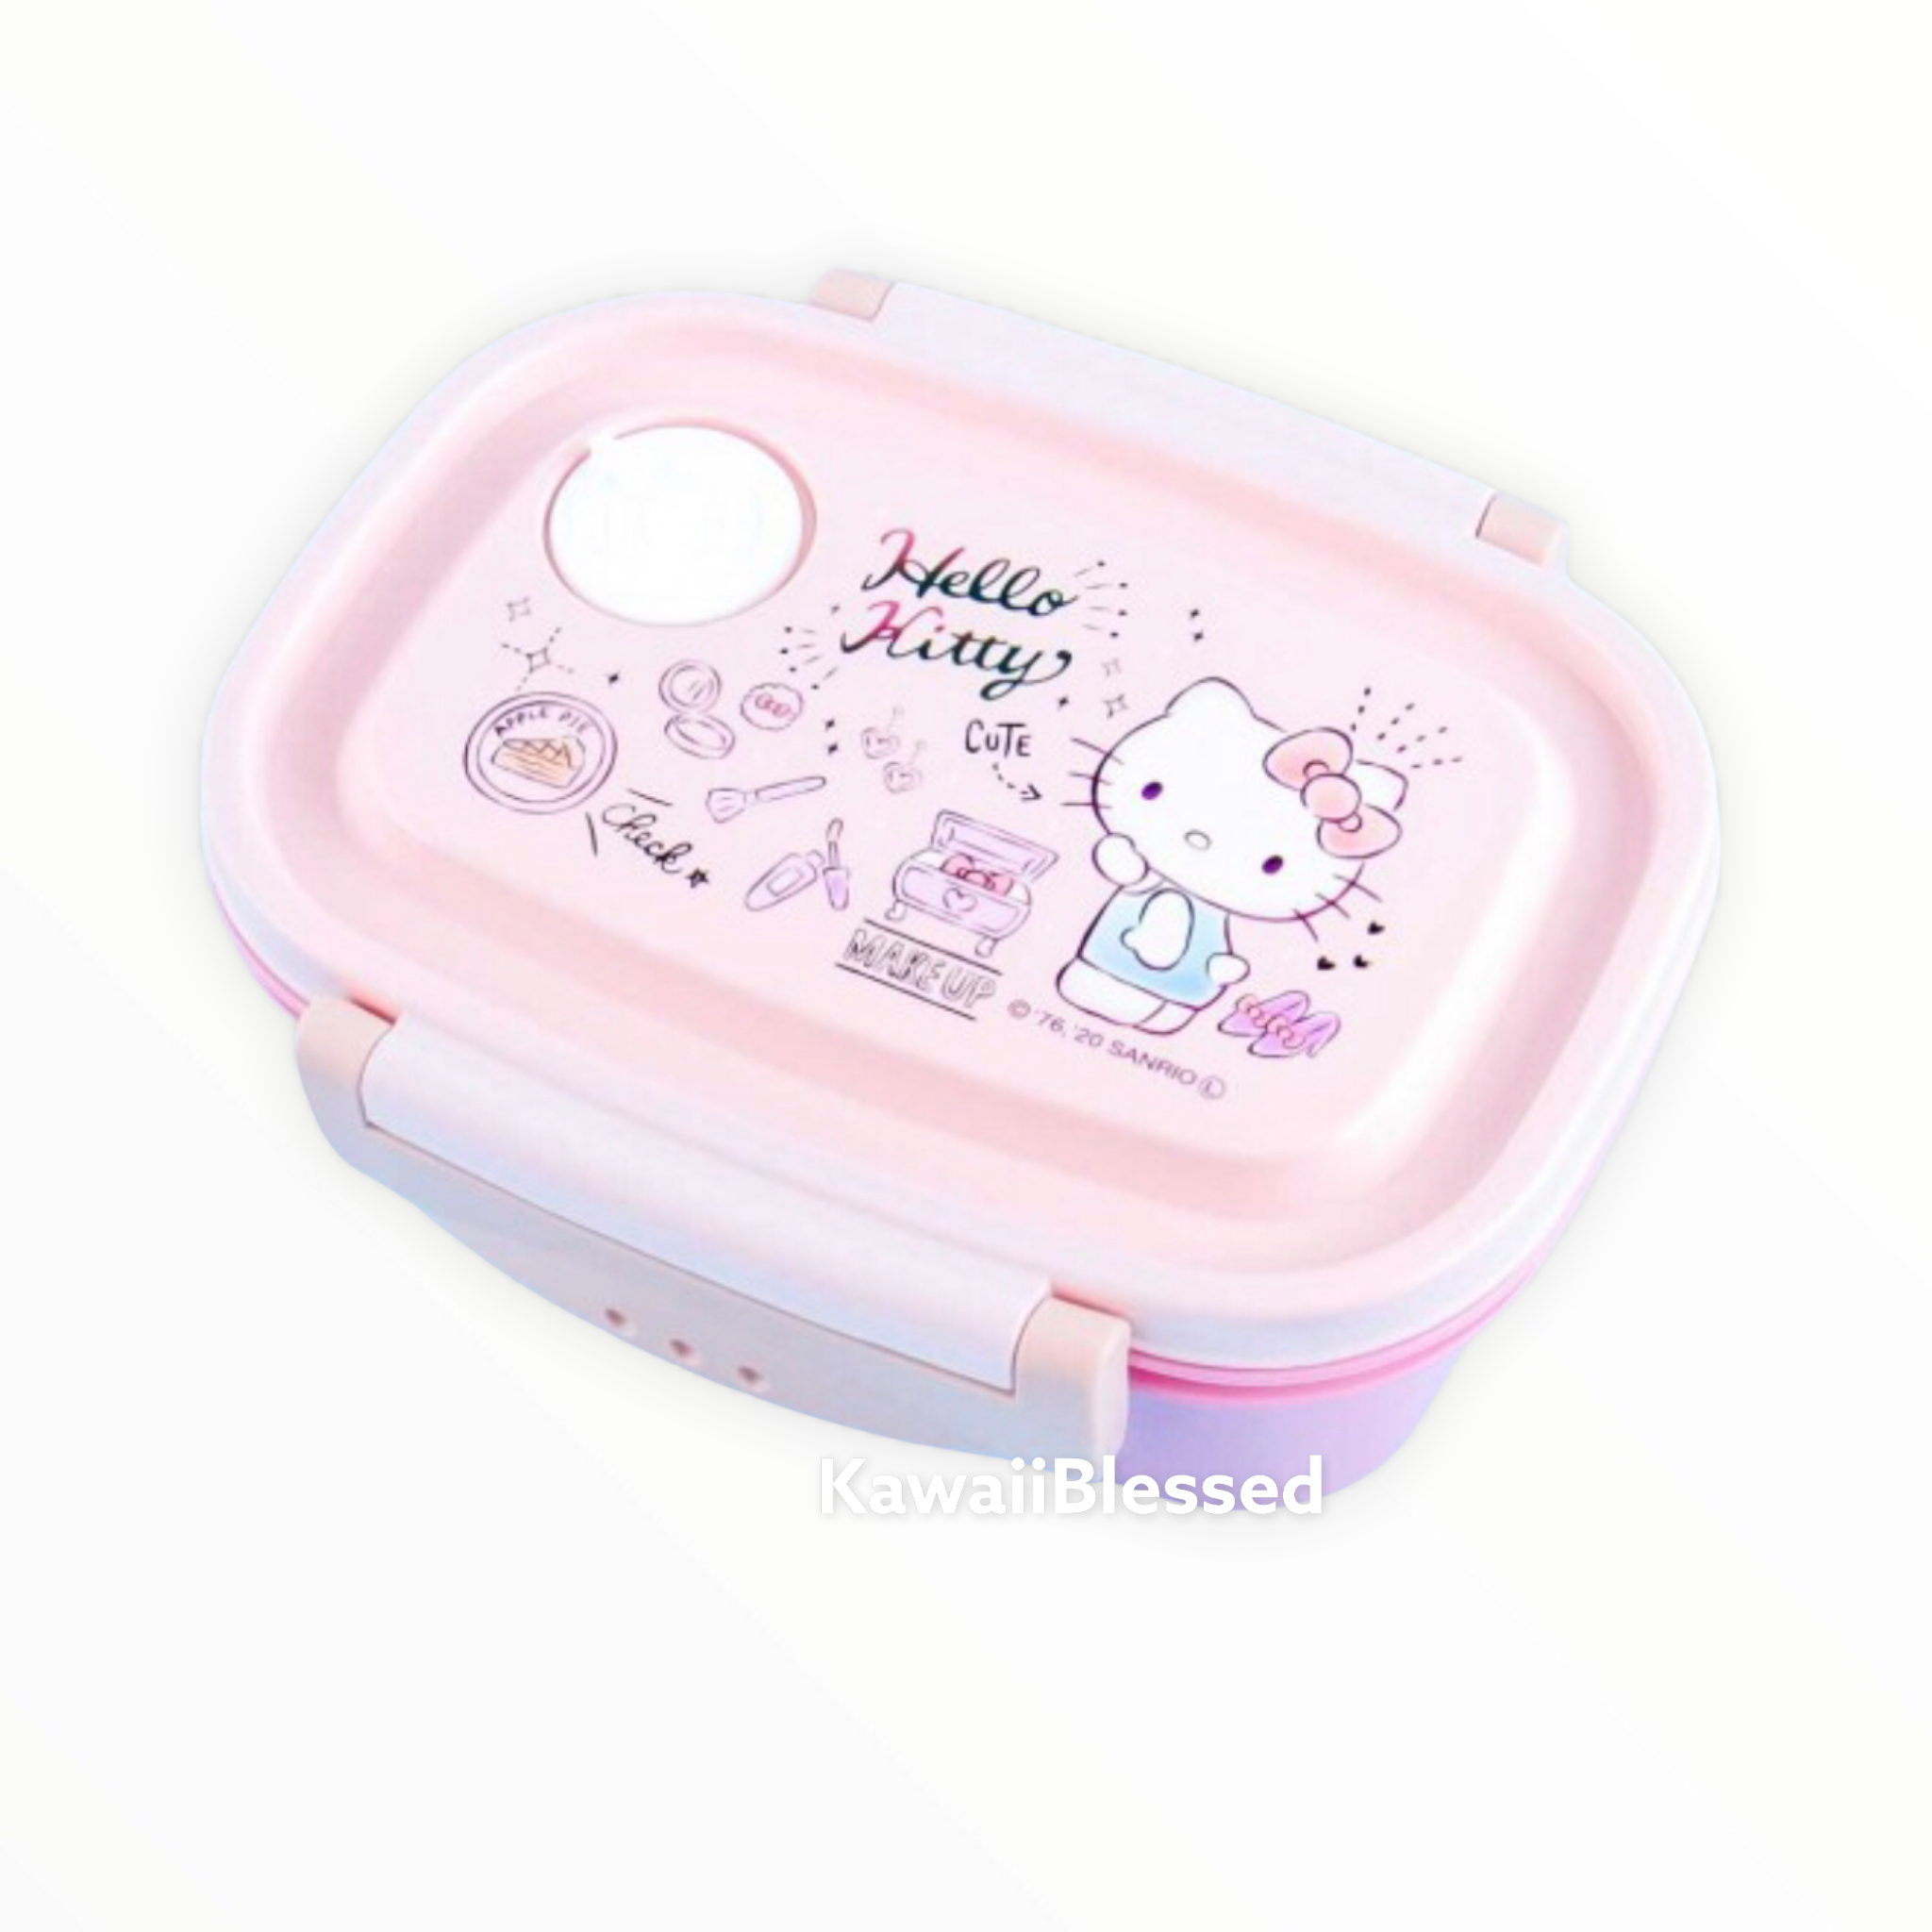 SANRIO Hello Kitty - Bento Box